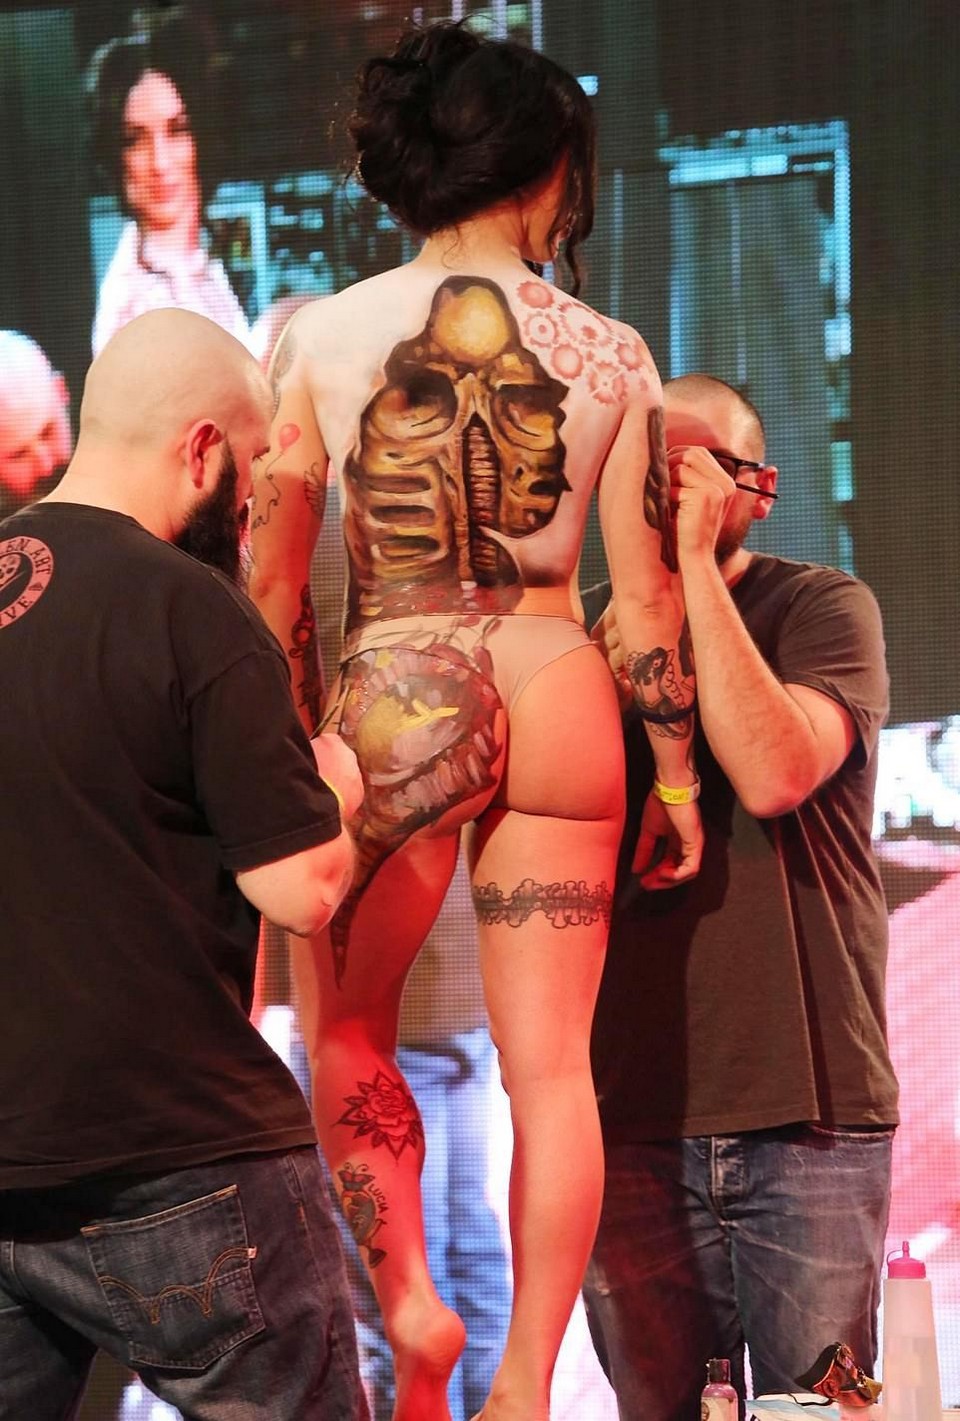 Сотни поклонников татуировок собрались на ежегодную конференцию в Милане МиР